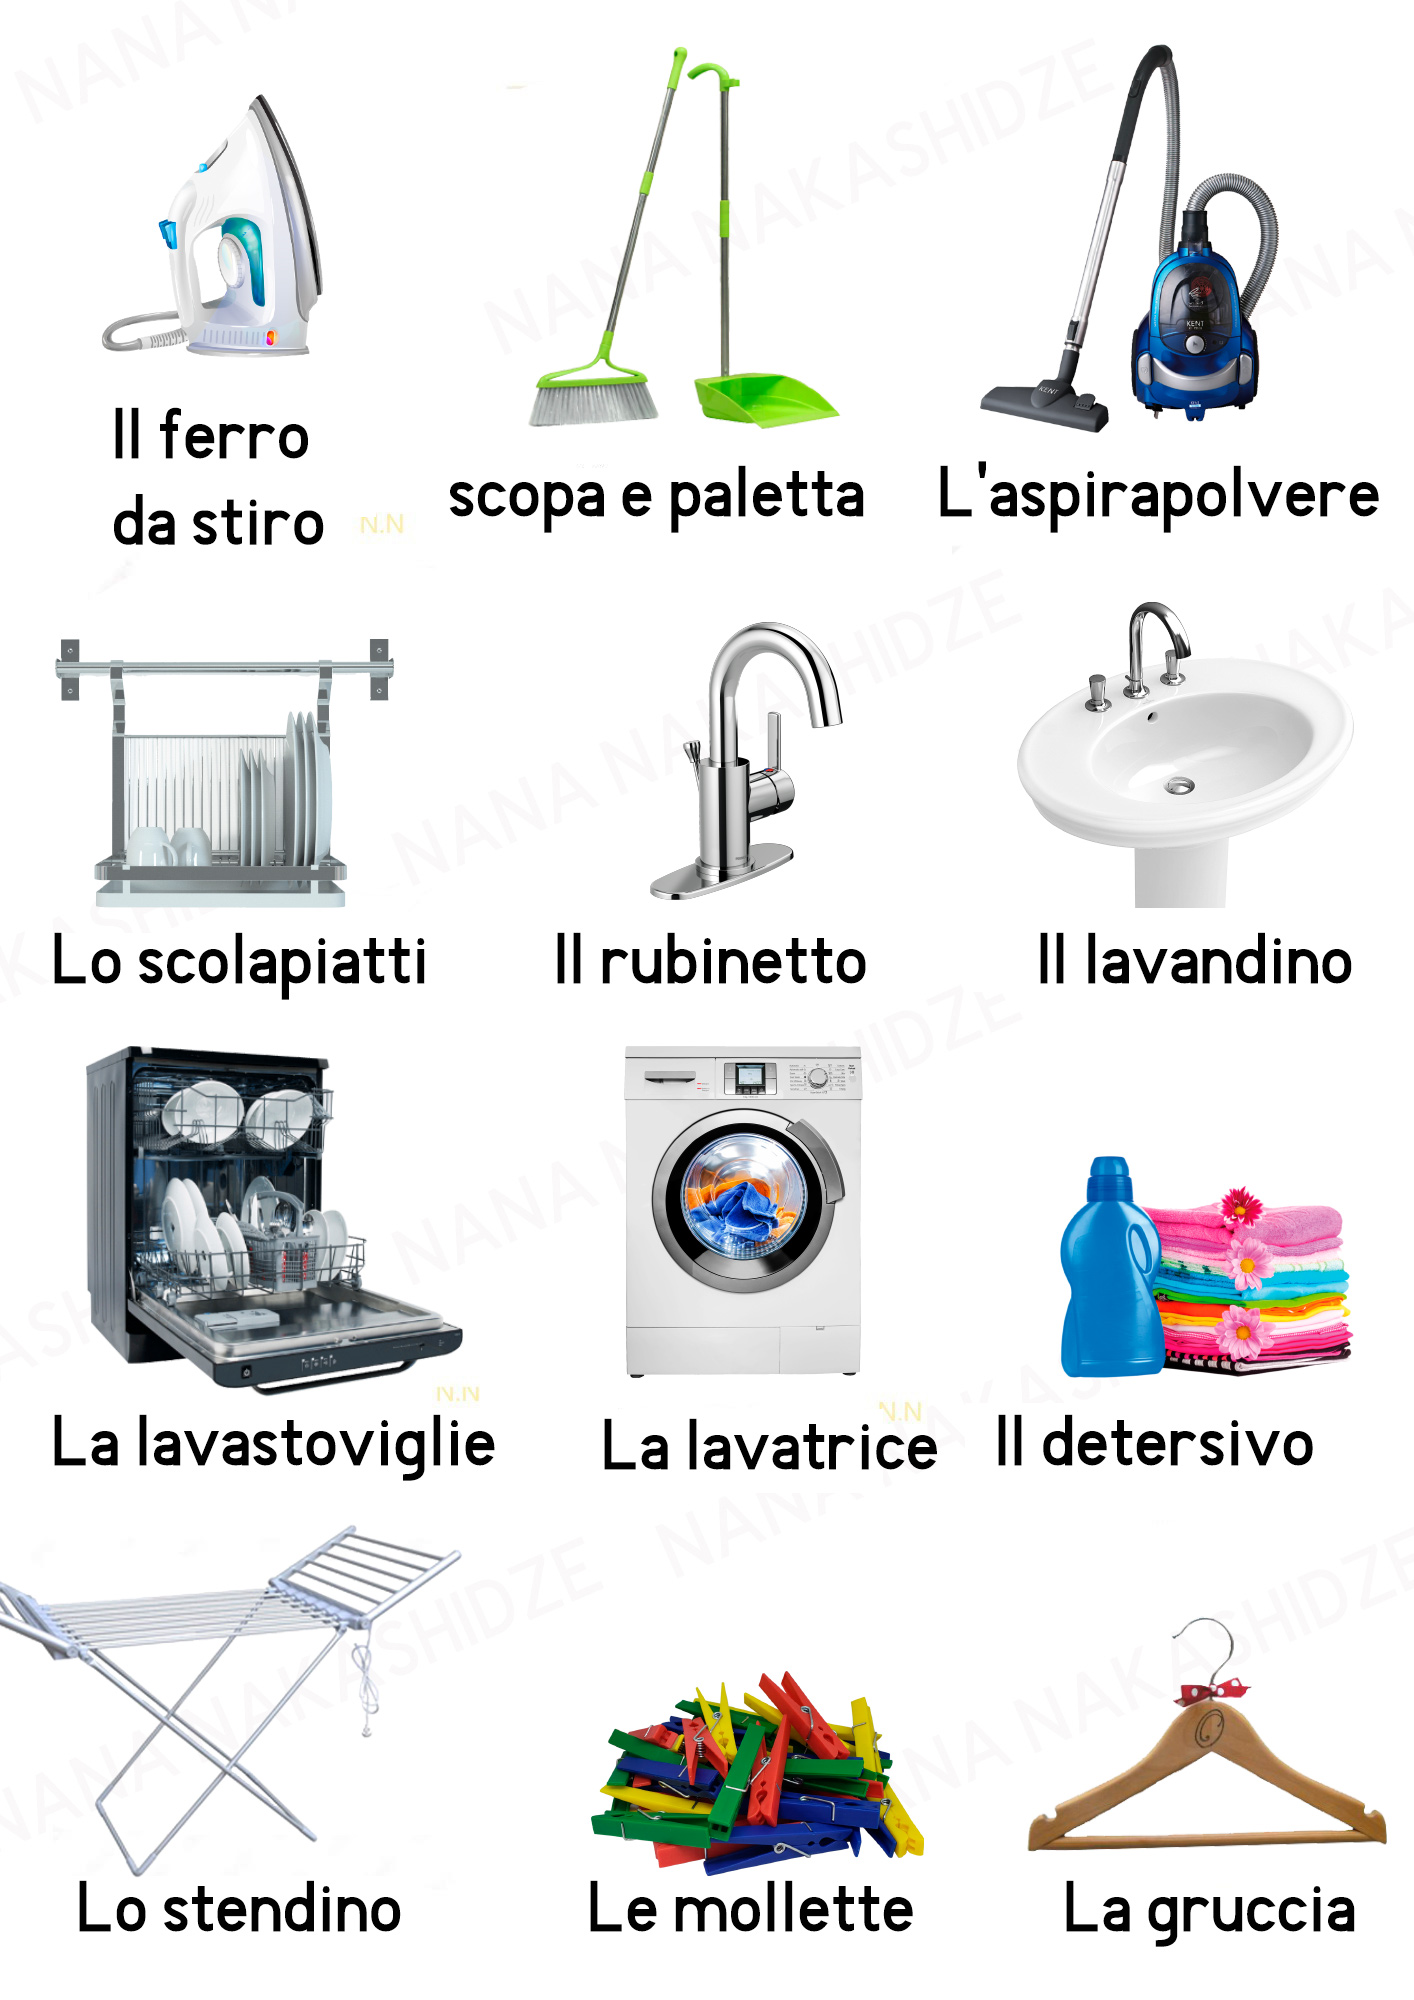 თარგმნა ნოტარიული დამოწმებით - იტალიურ ენაზე